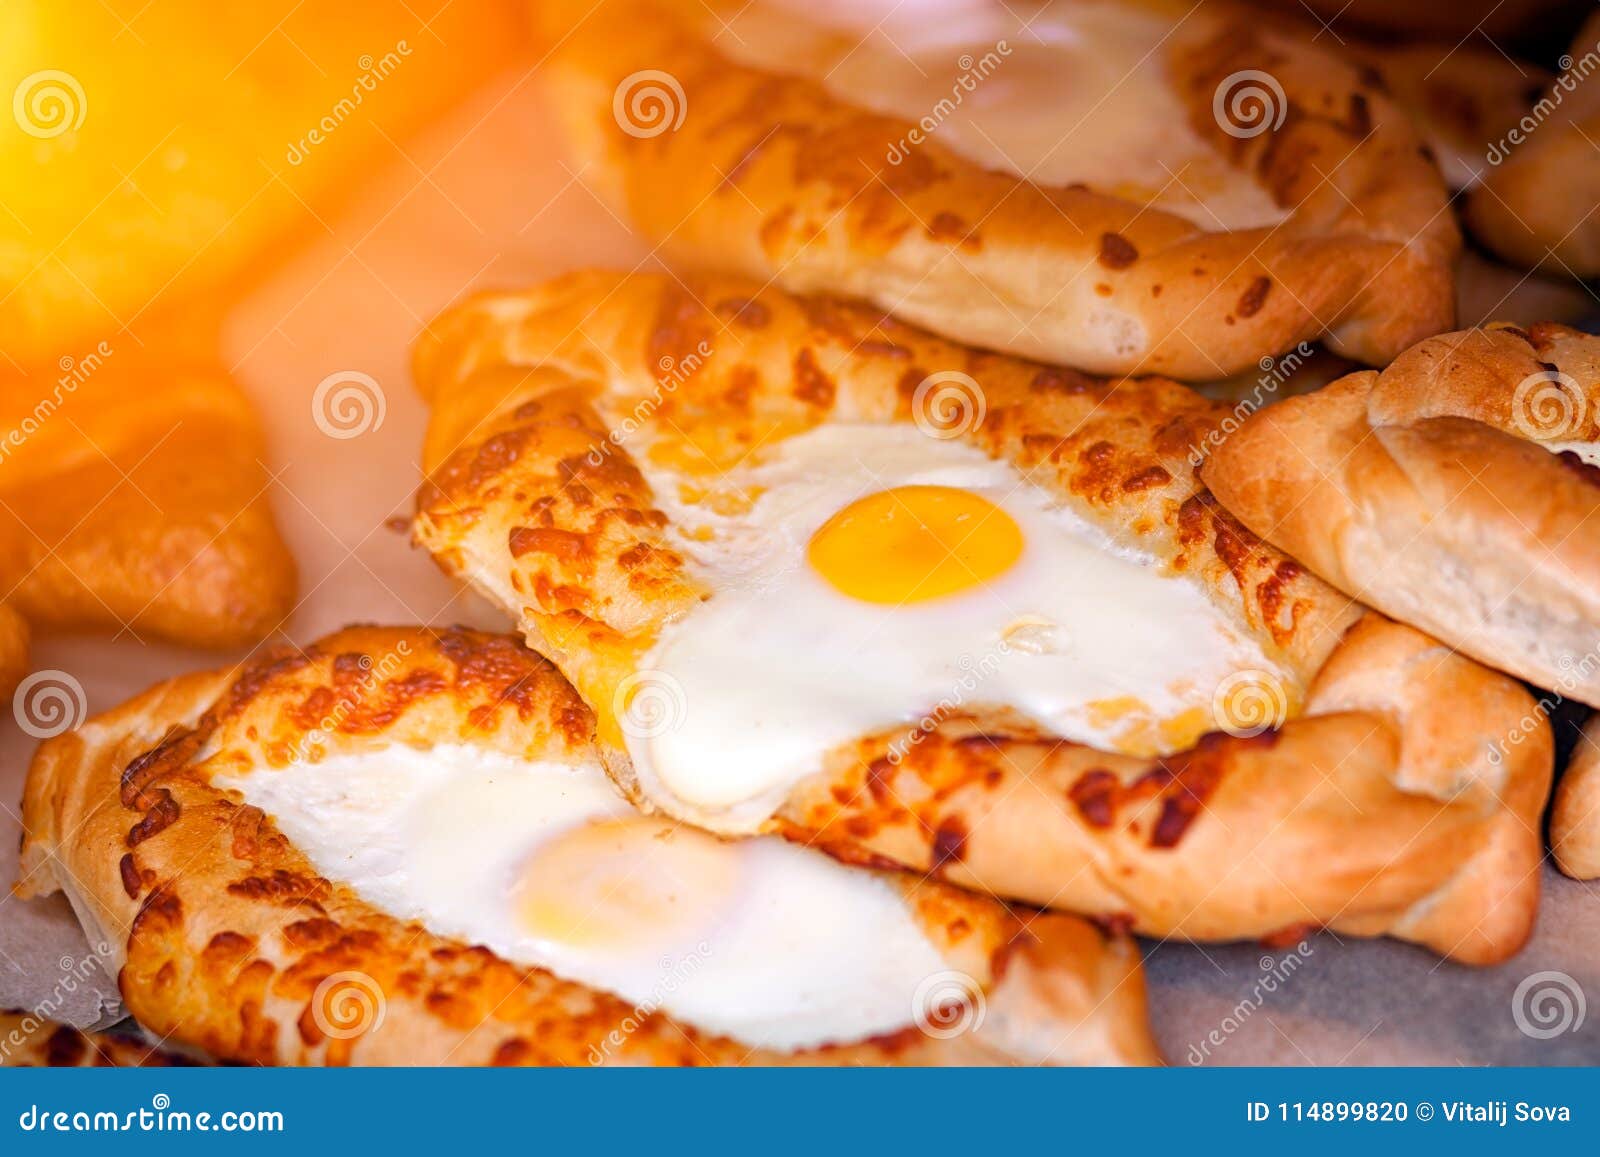 Khachapuri buns with egg. Close-up van verse heerlijke vers gebakken khachapuribroodjes met ei in rechte rijen